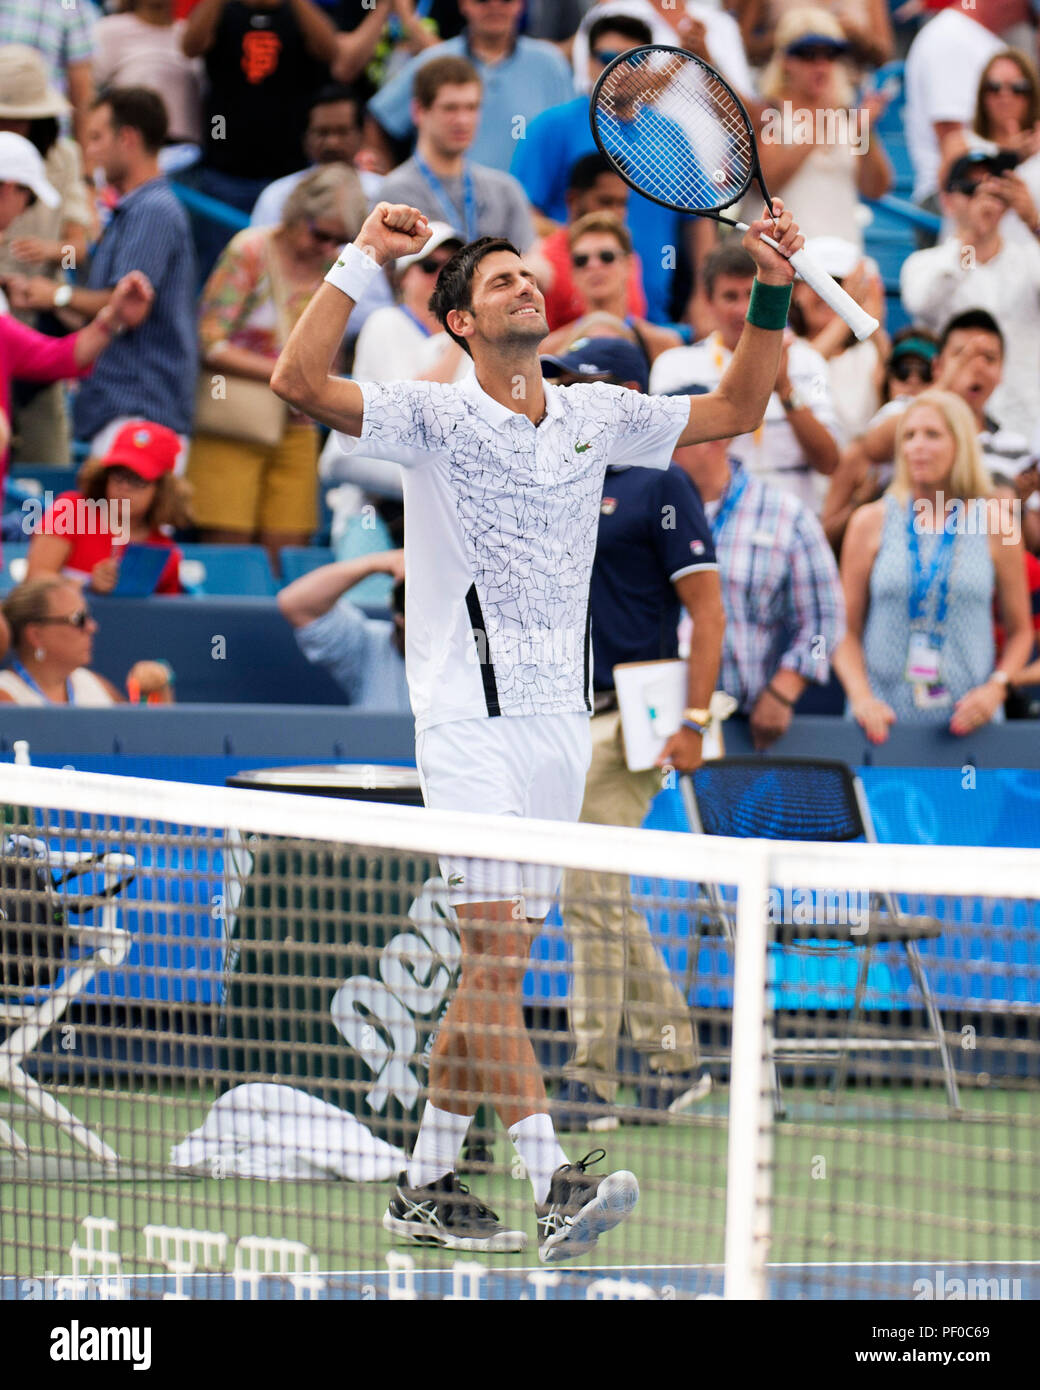 Ohio, USA. 18. August 2018. Novak Djokovic (SRB) feiert seinen Sieg über Marin Cilic (CRO) der westlichen Süden öffnen, Mason, Ohio, USA. Brent Clark/Alamy leben Nachrichten Stockfoto